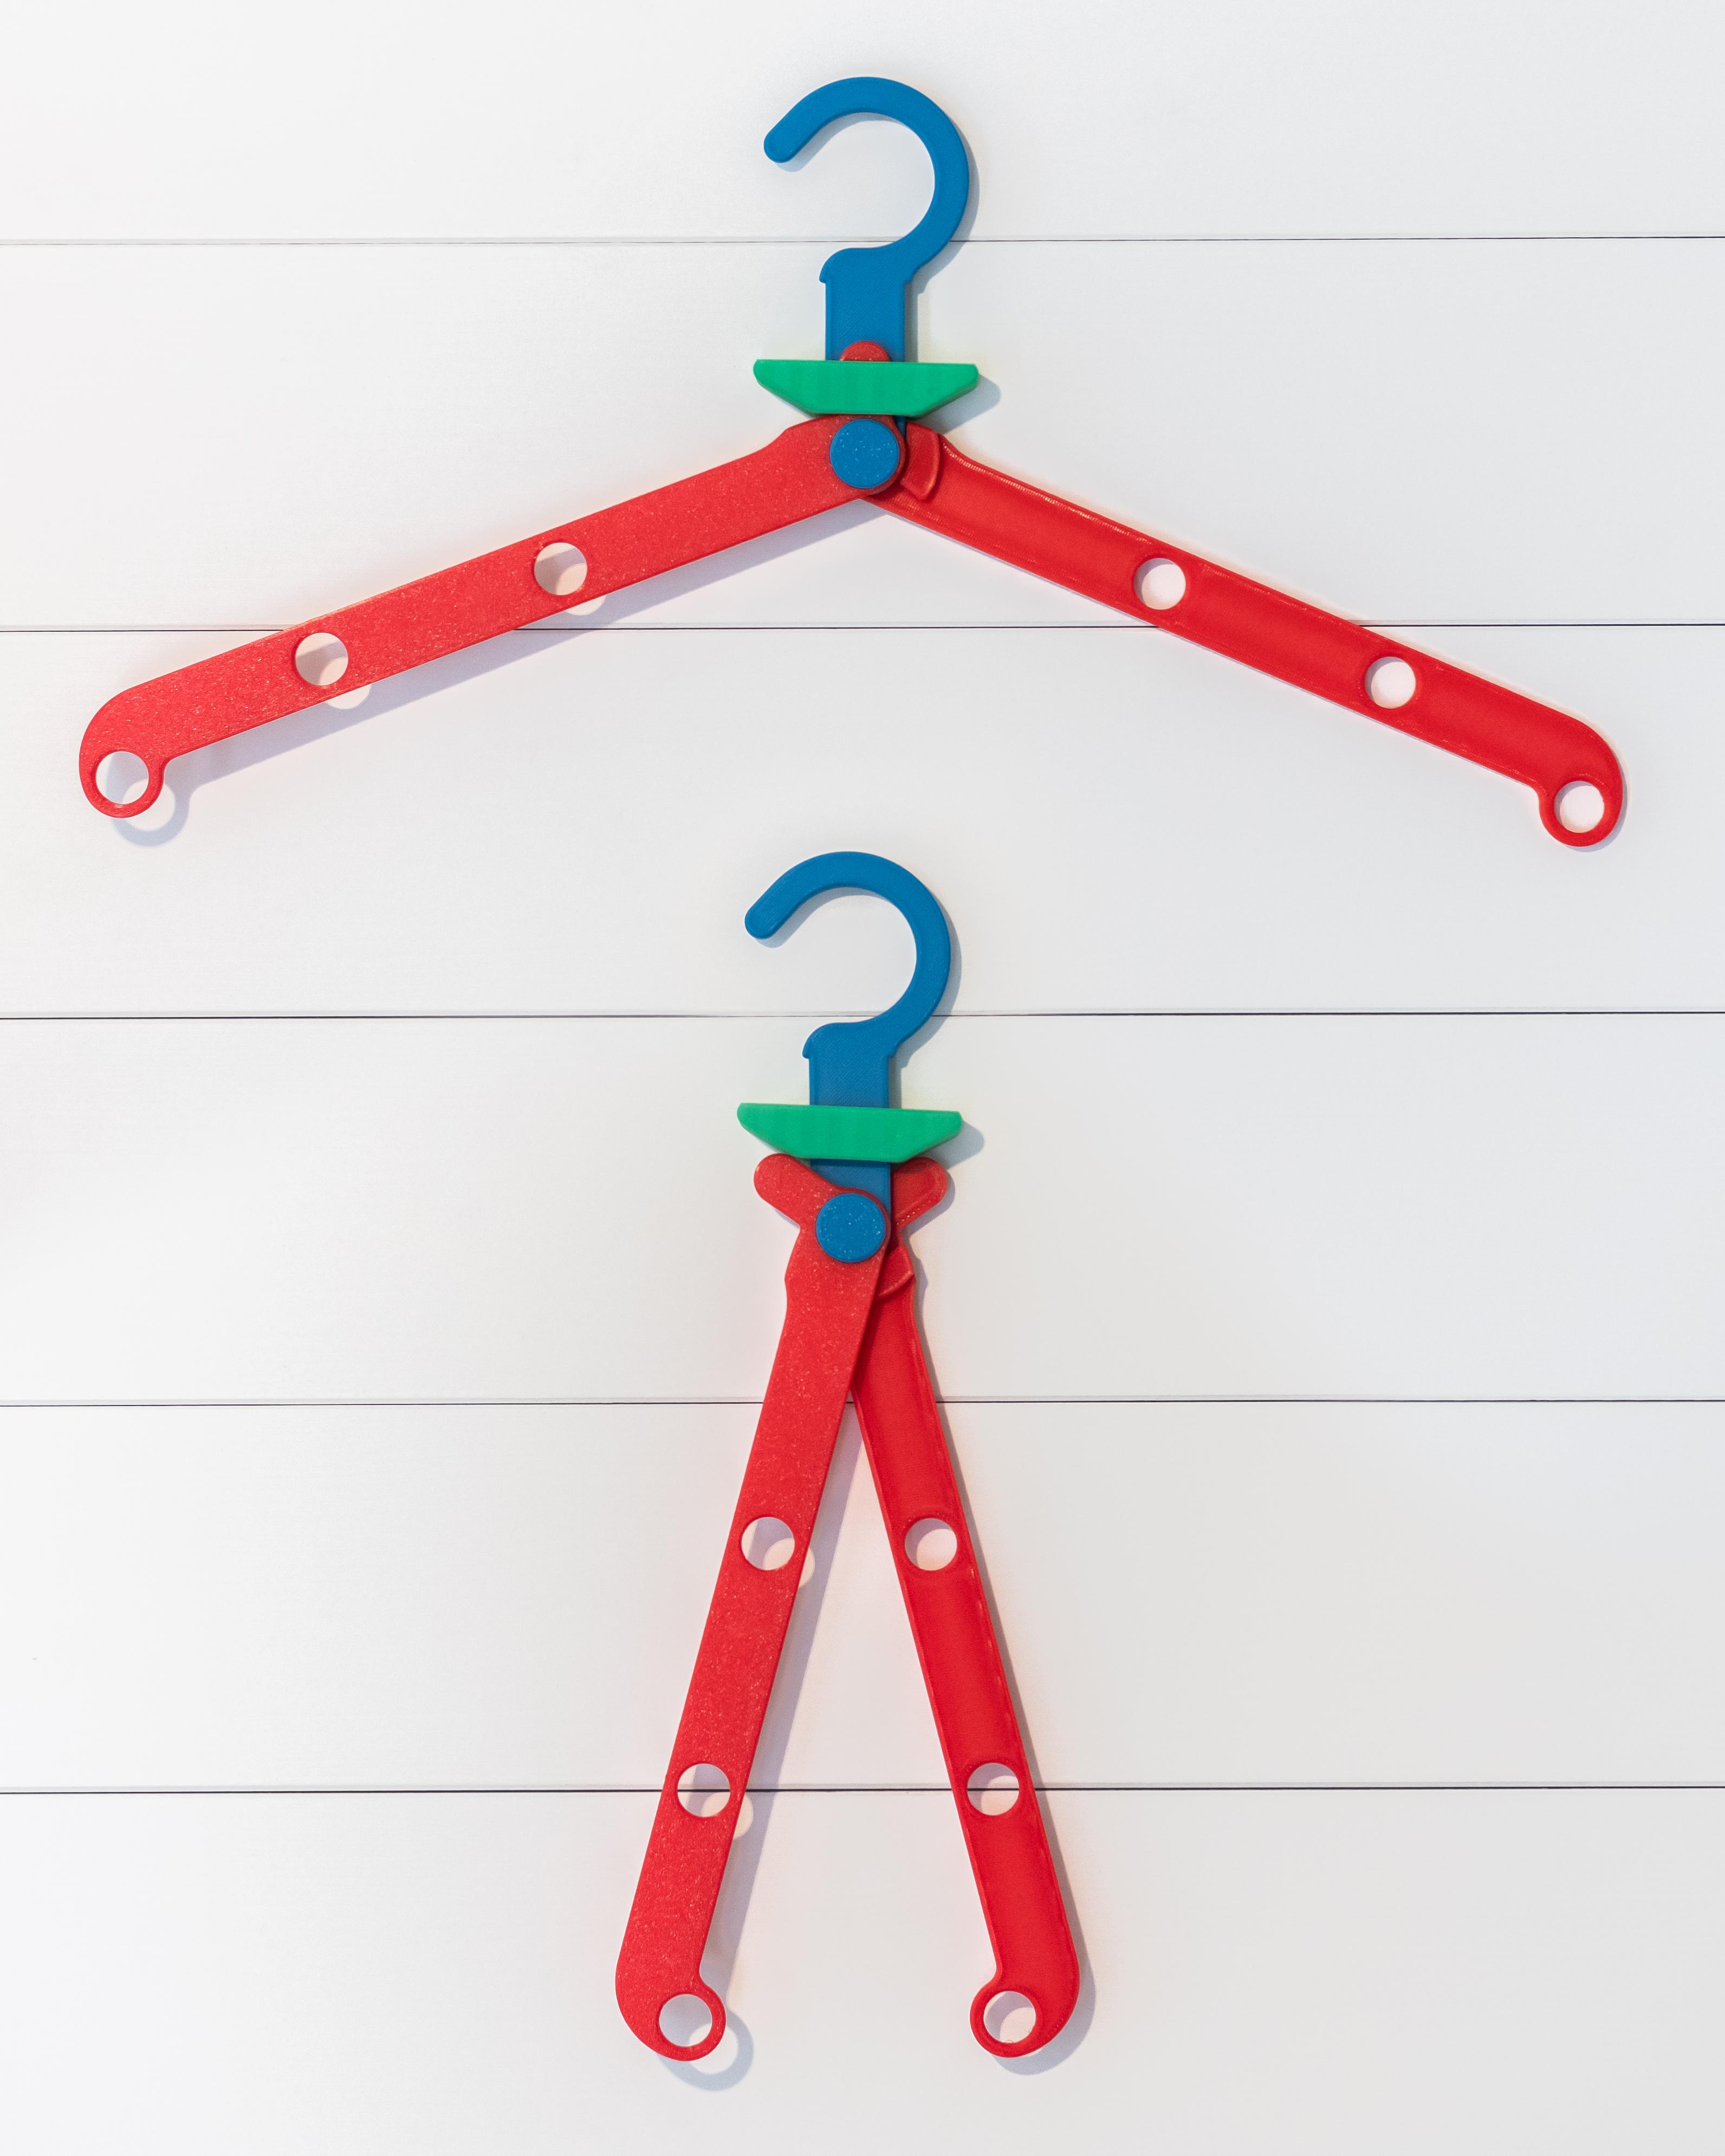 EZPZ Hanger // Folding Clothes Hanger 3d model